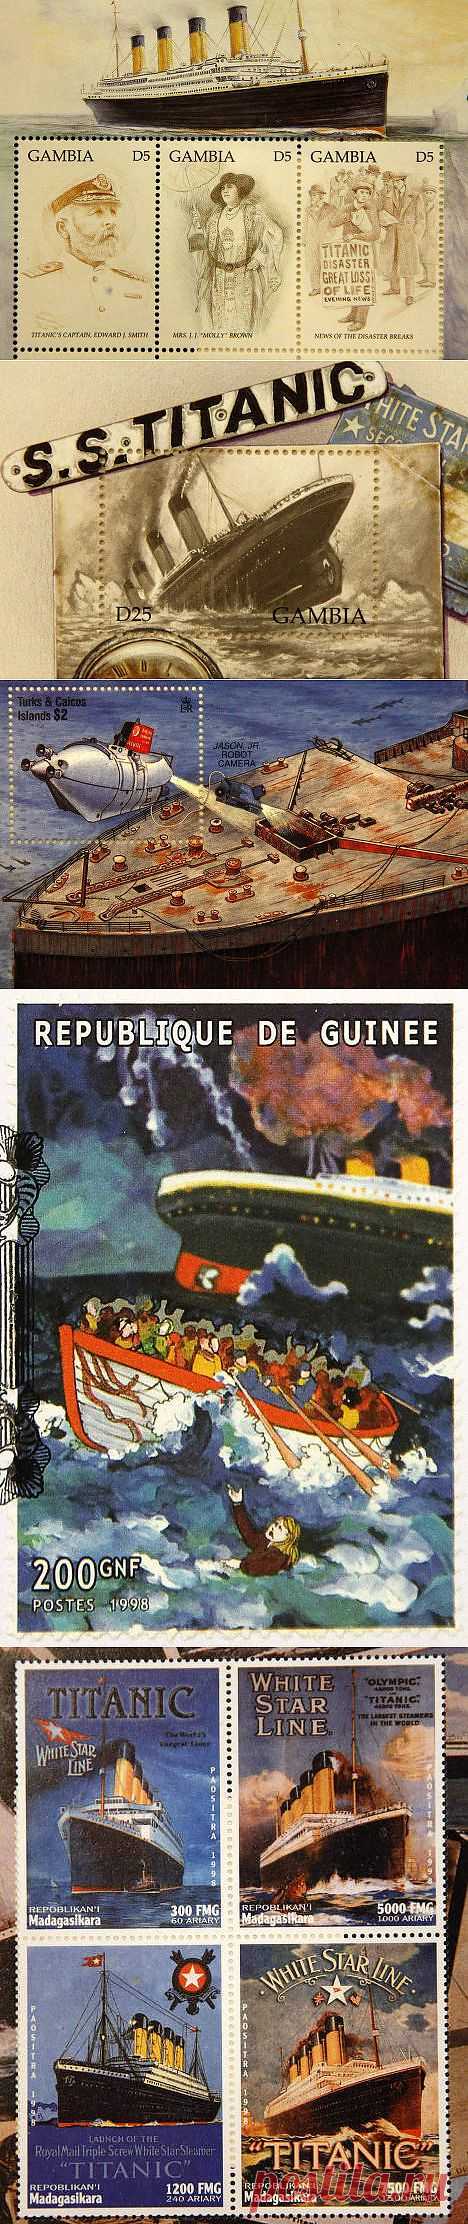 Памятные марки, посвященные "Титанику" | РИА Новости